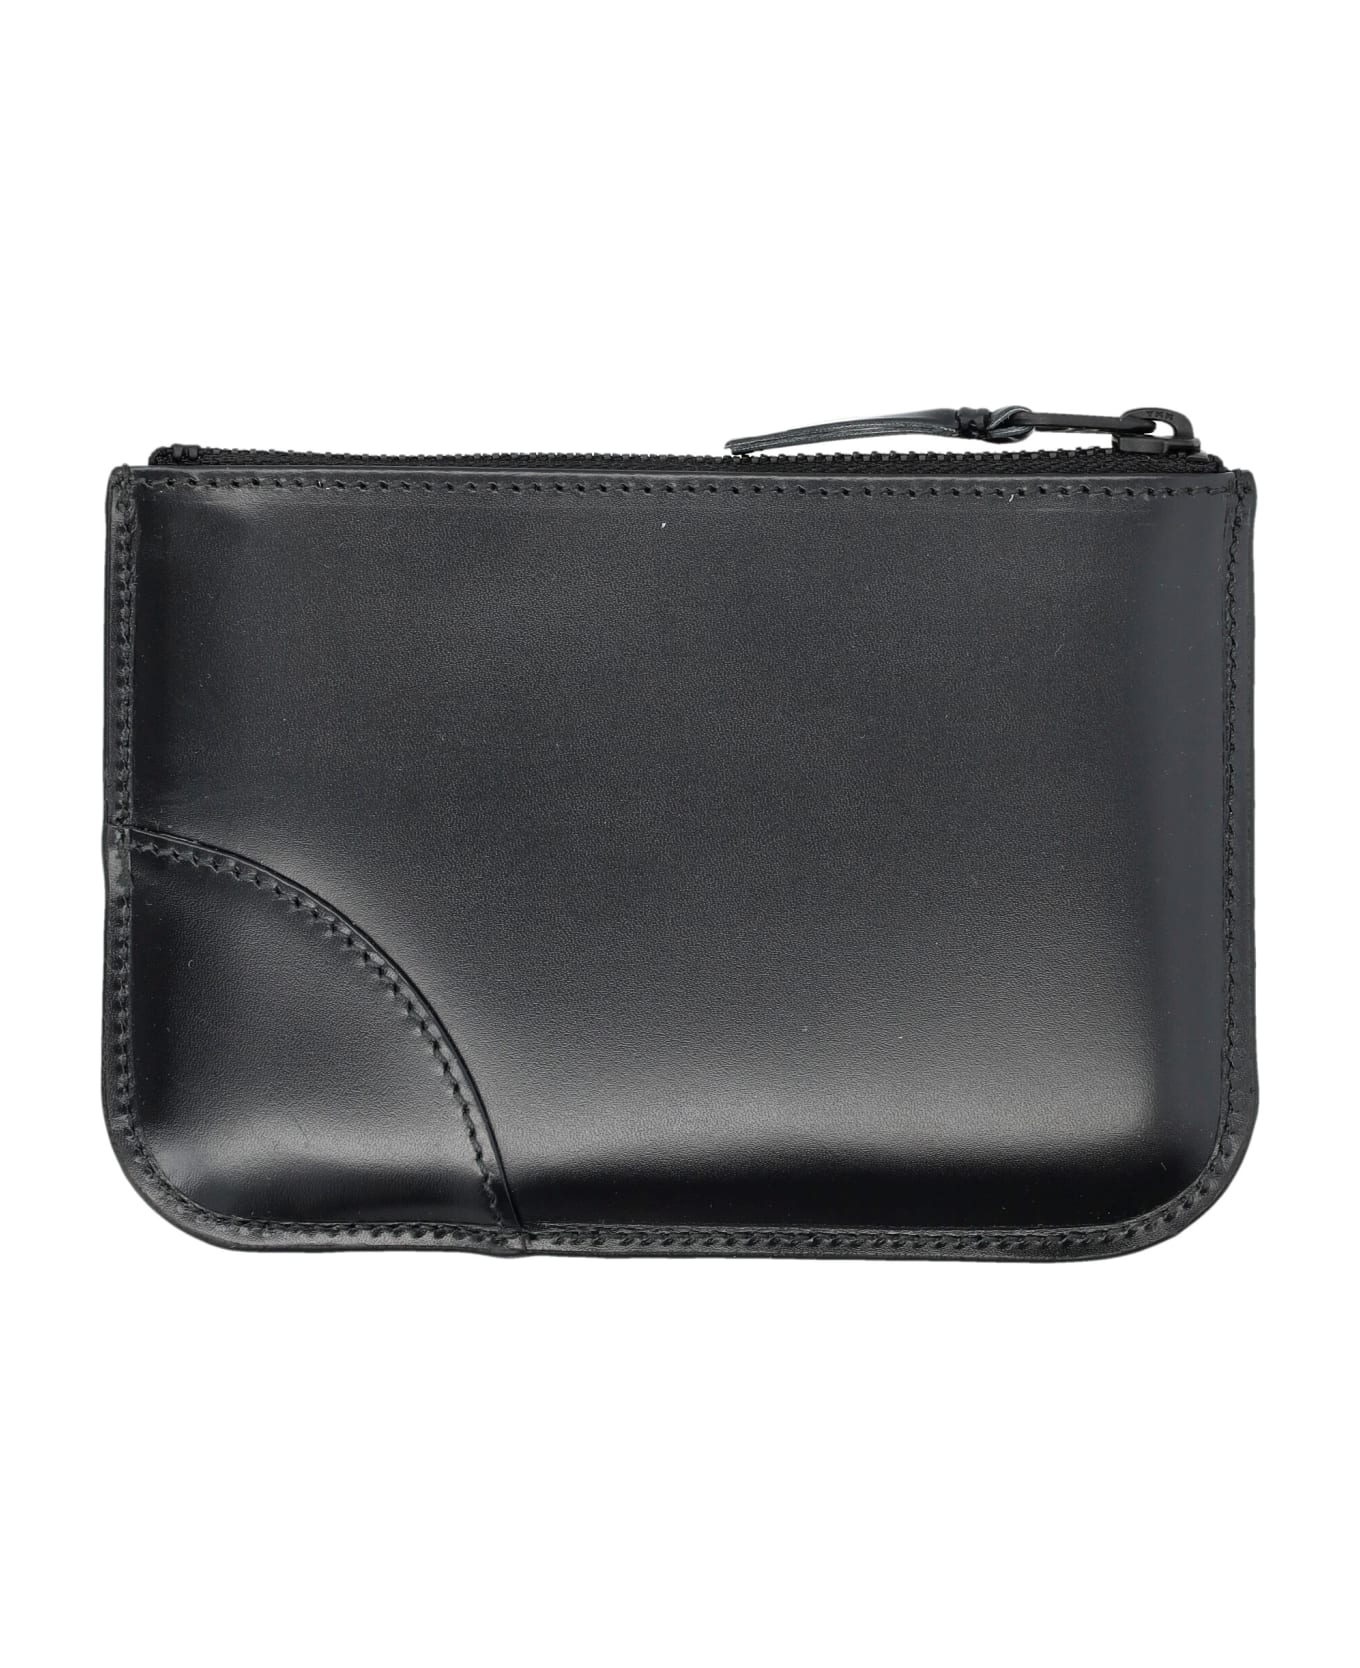 Comme des Garçons Wallet Xsmall Classic Leather Pouch - BLACK 財布